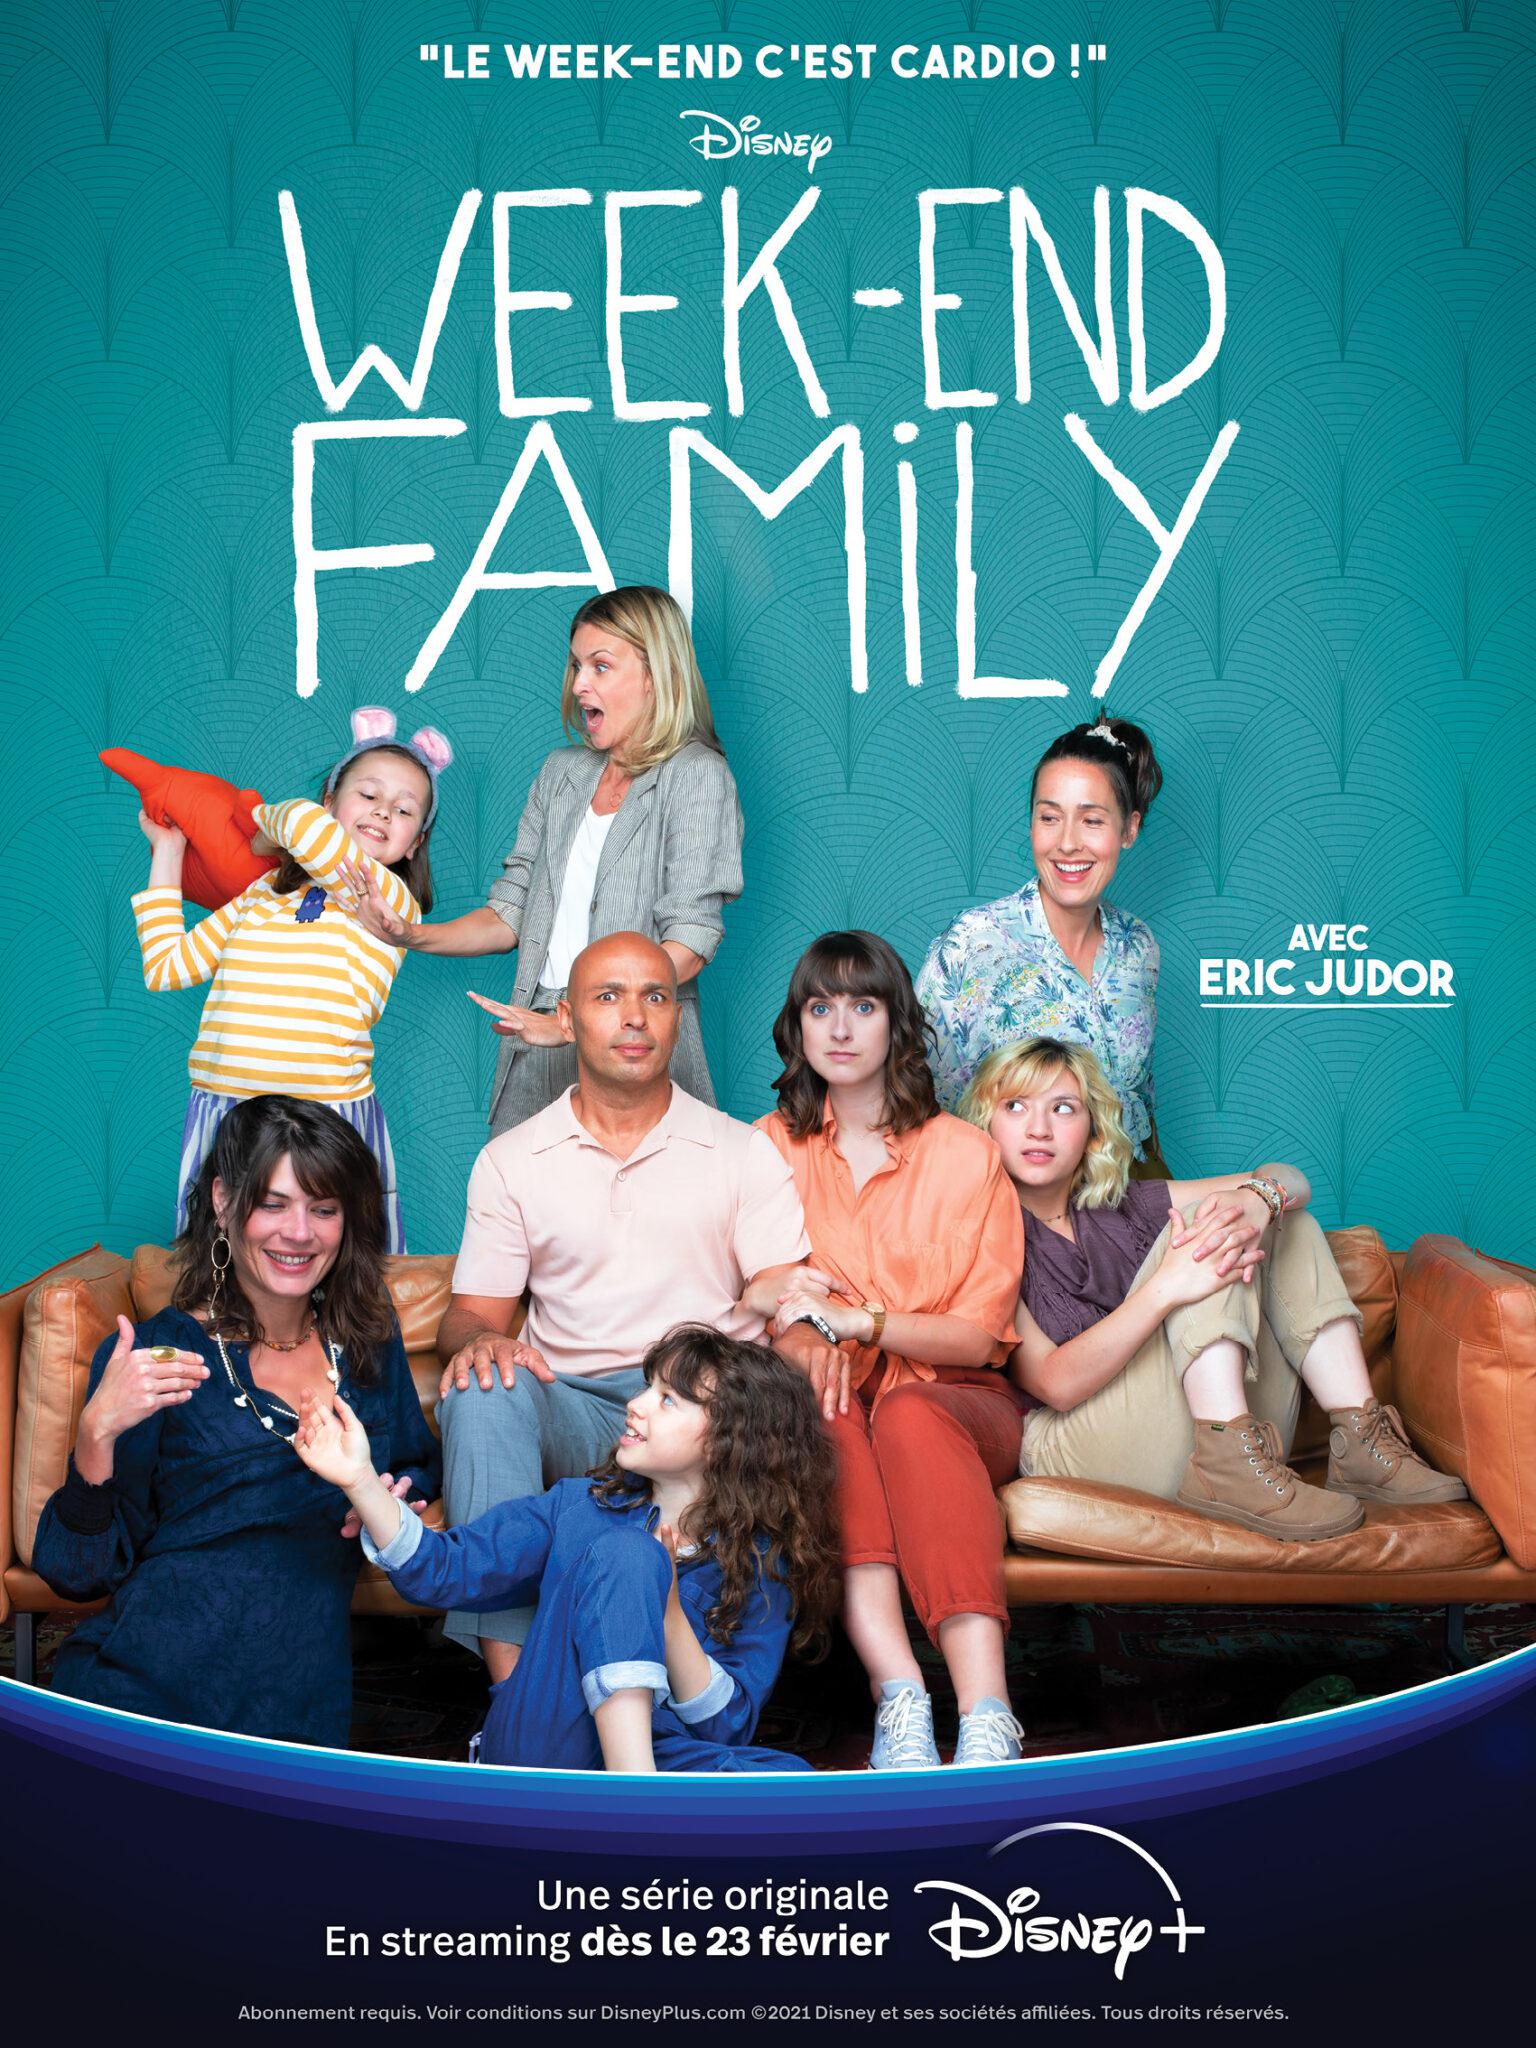 TV ratings for Weekend Family in Spain. Disney+ TV series